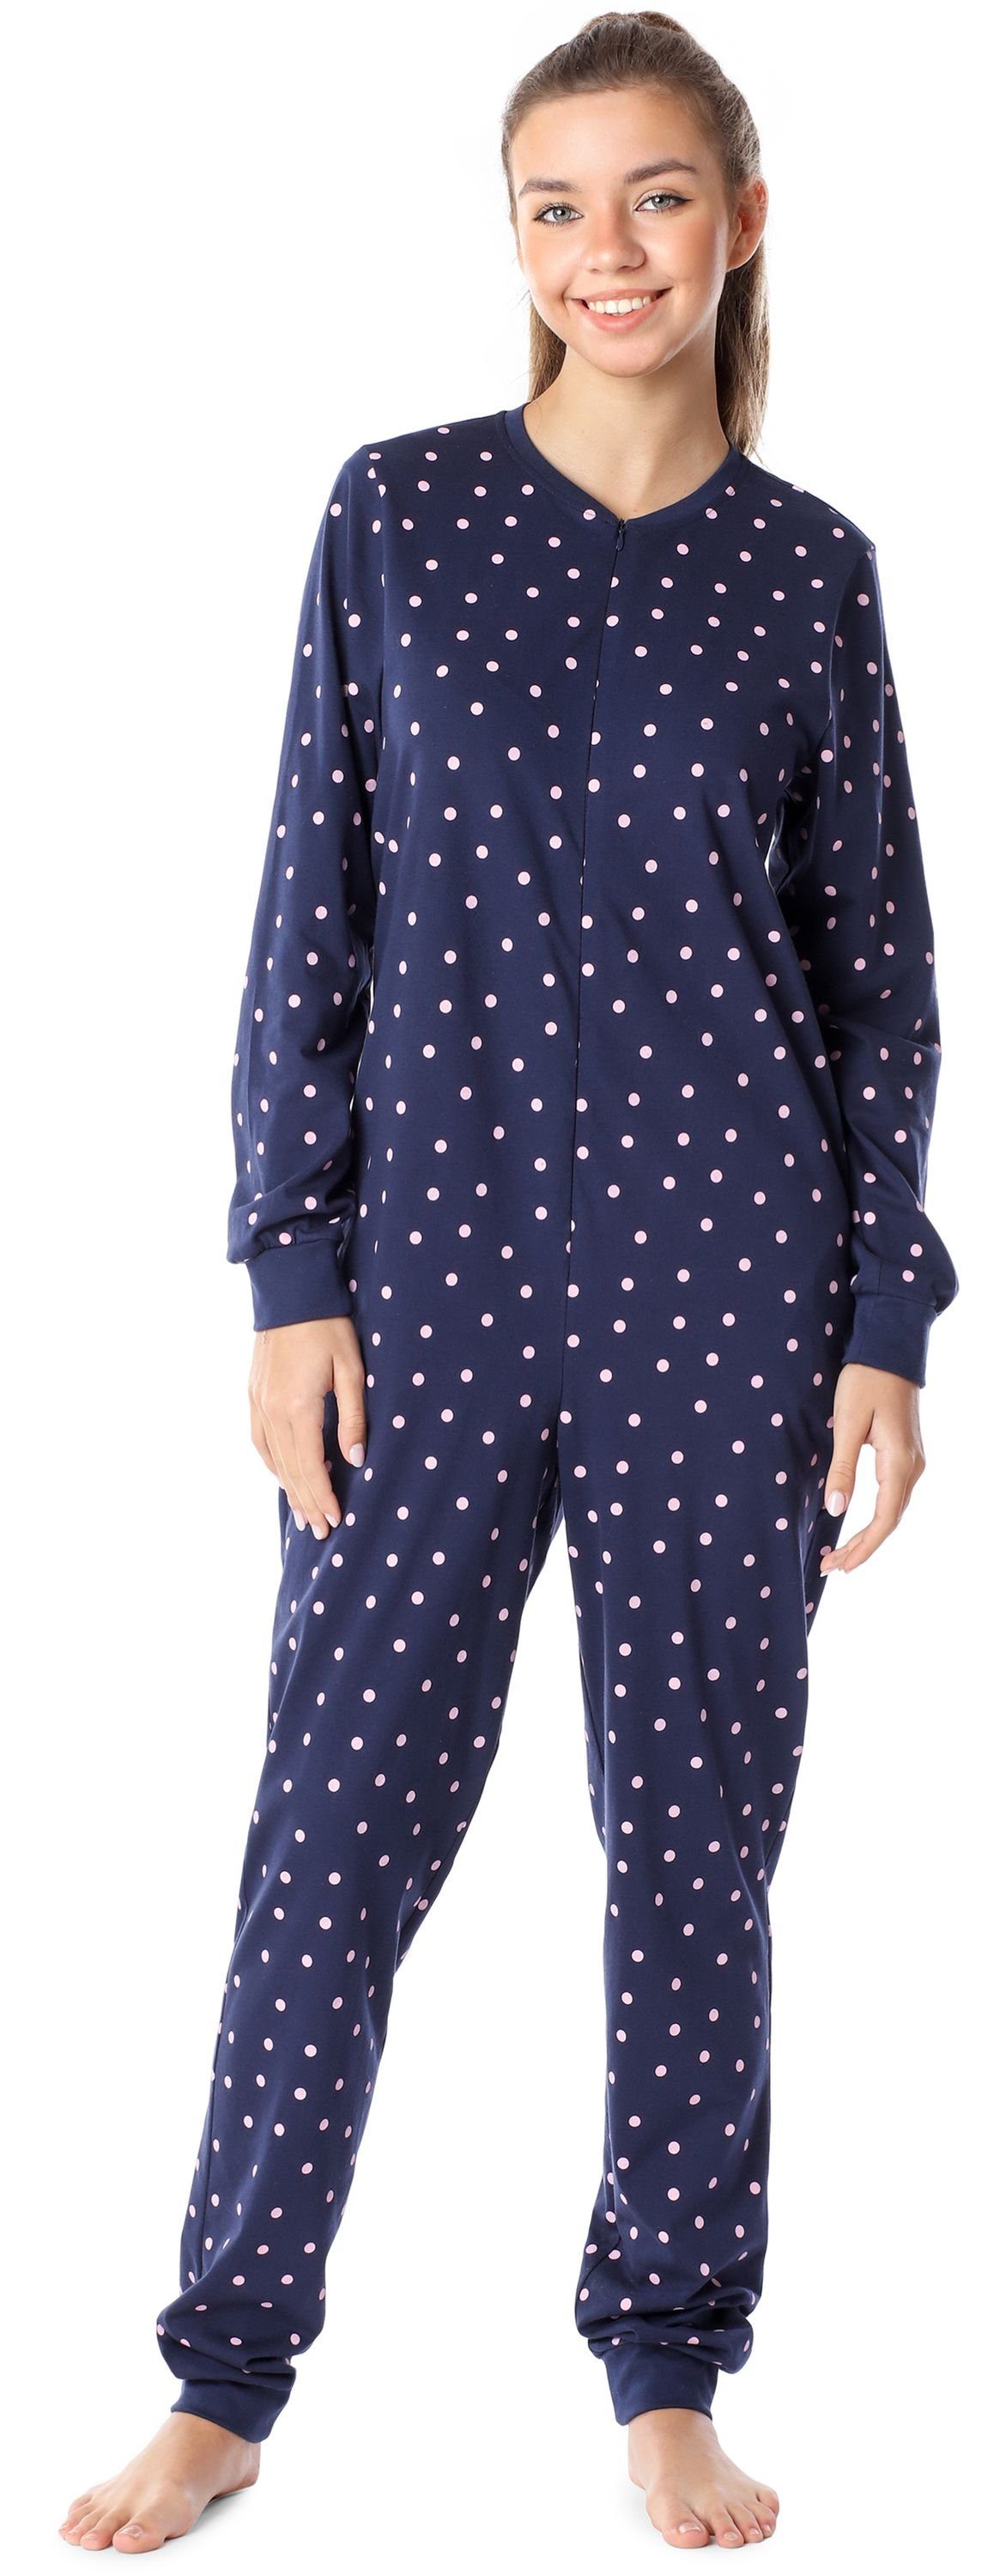 MS10-235 Mädchen Marine/Punkte Jugend Merry Style Schlafoverall Schlafanzug Schlafanzug